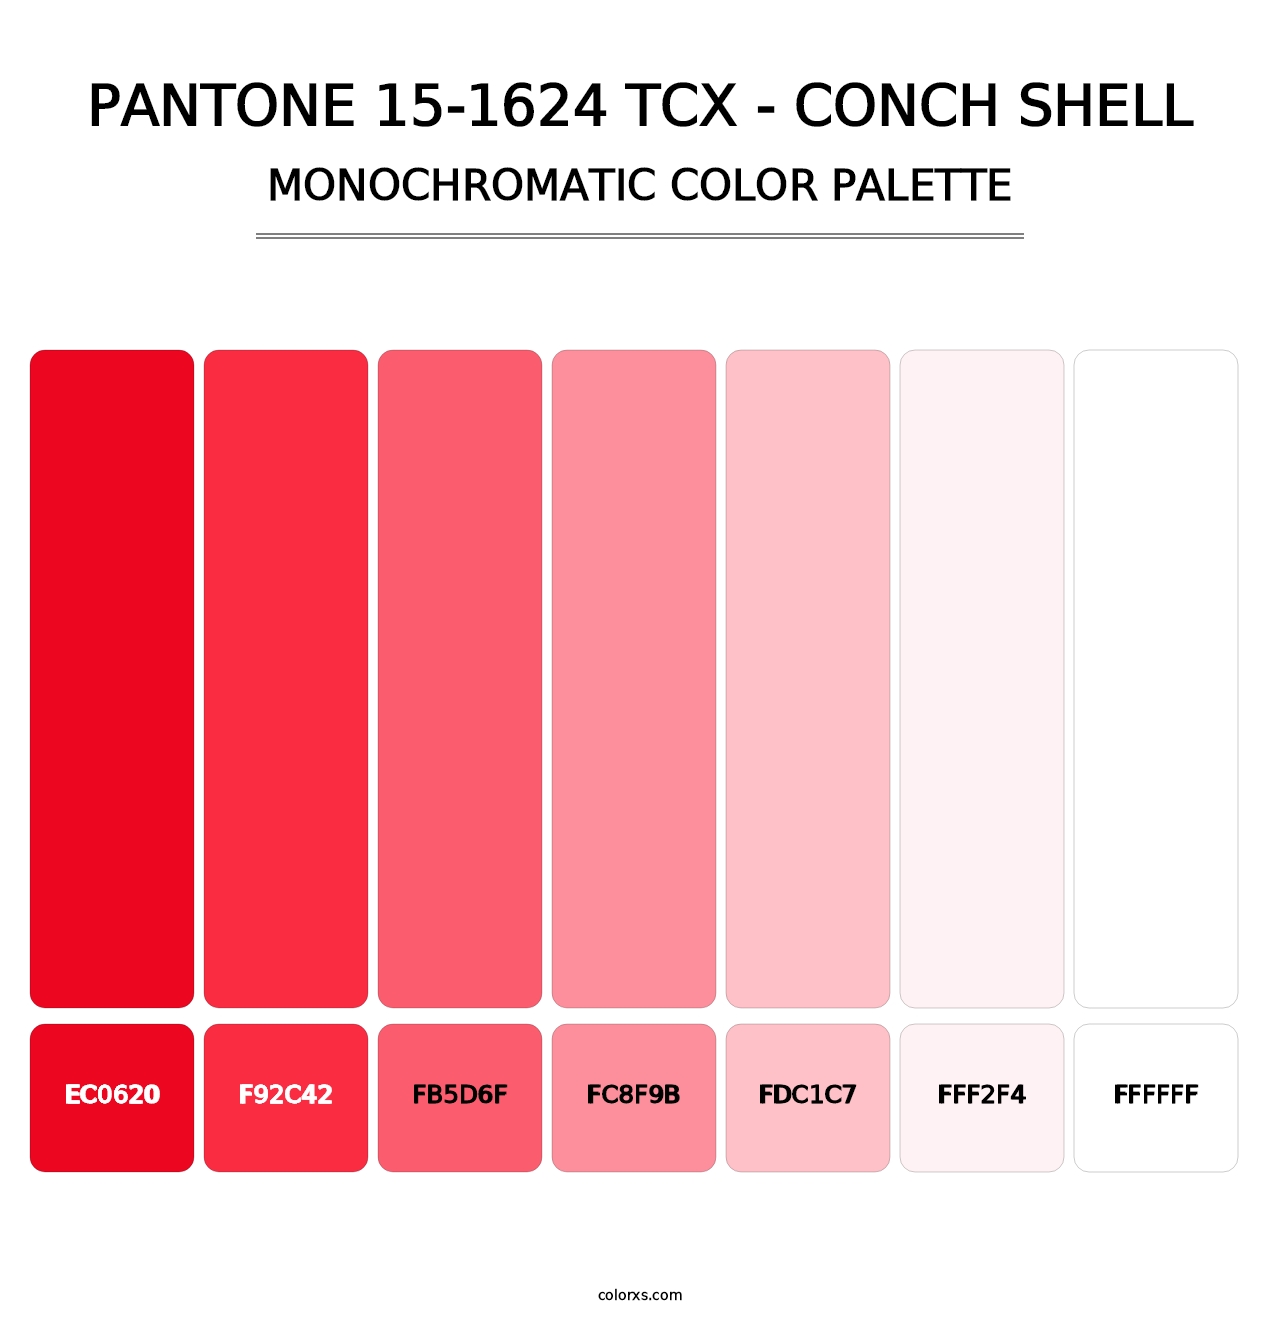 PANTONE 15-1624 TCX - Conch Shell - Monochromatic Color Palette